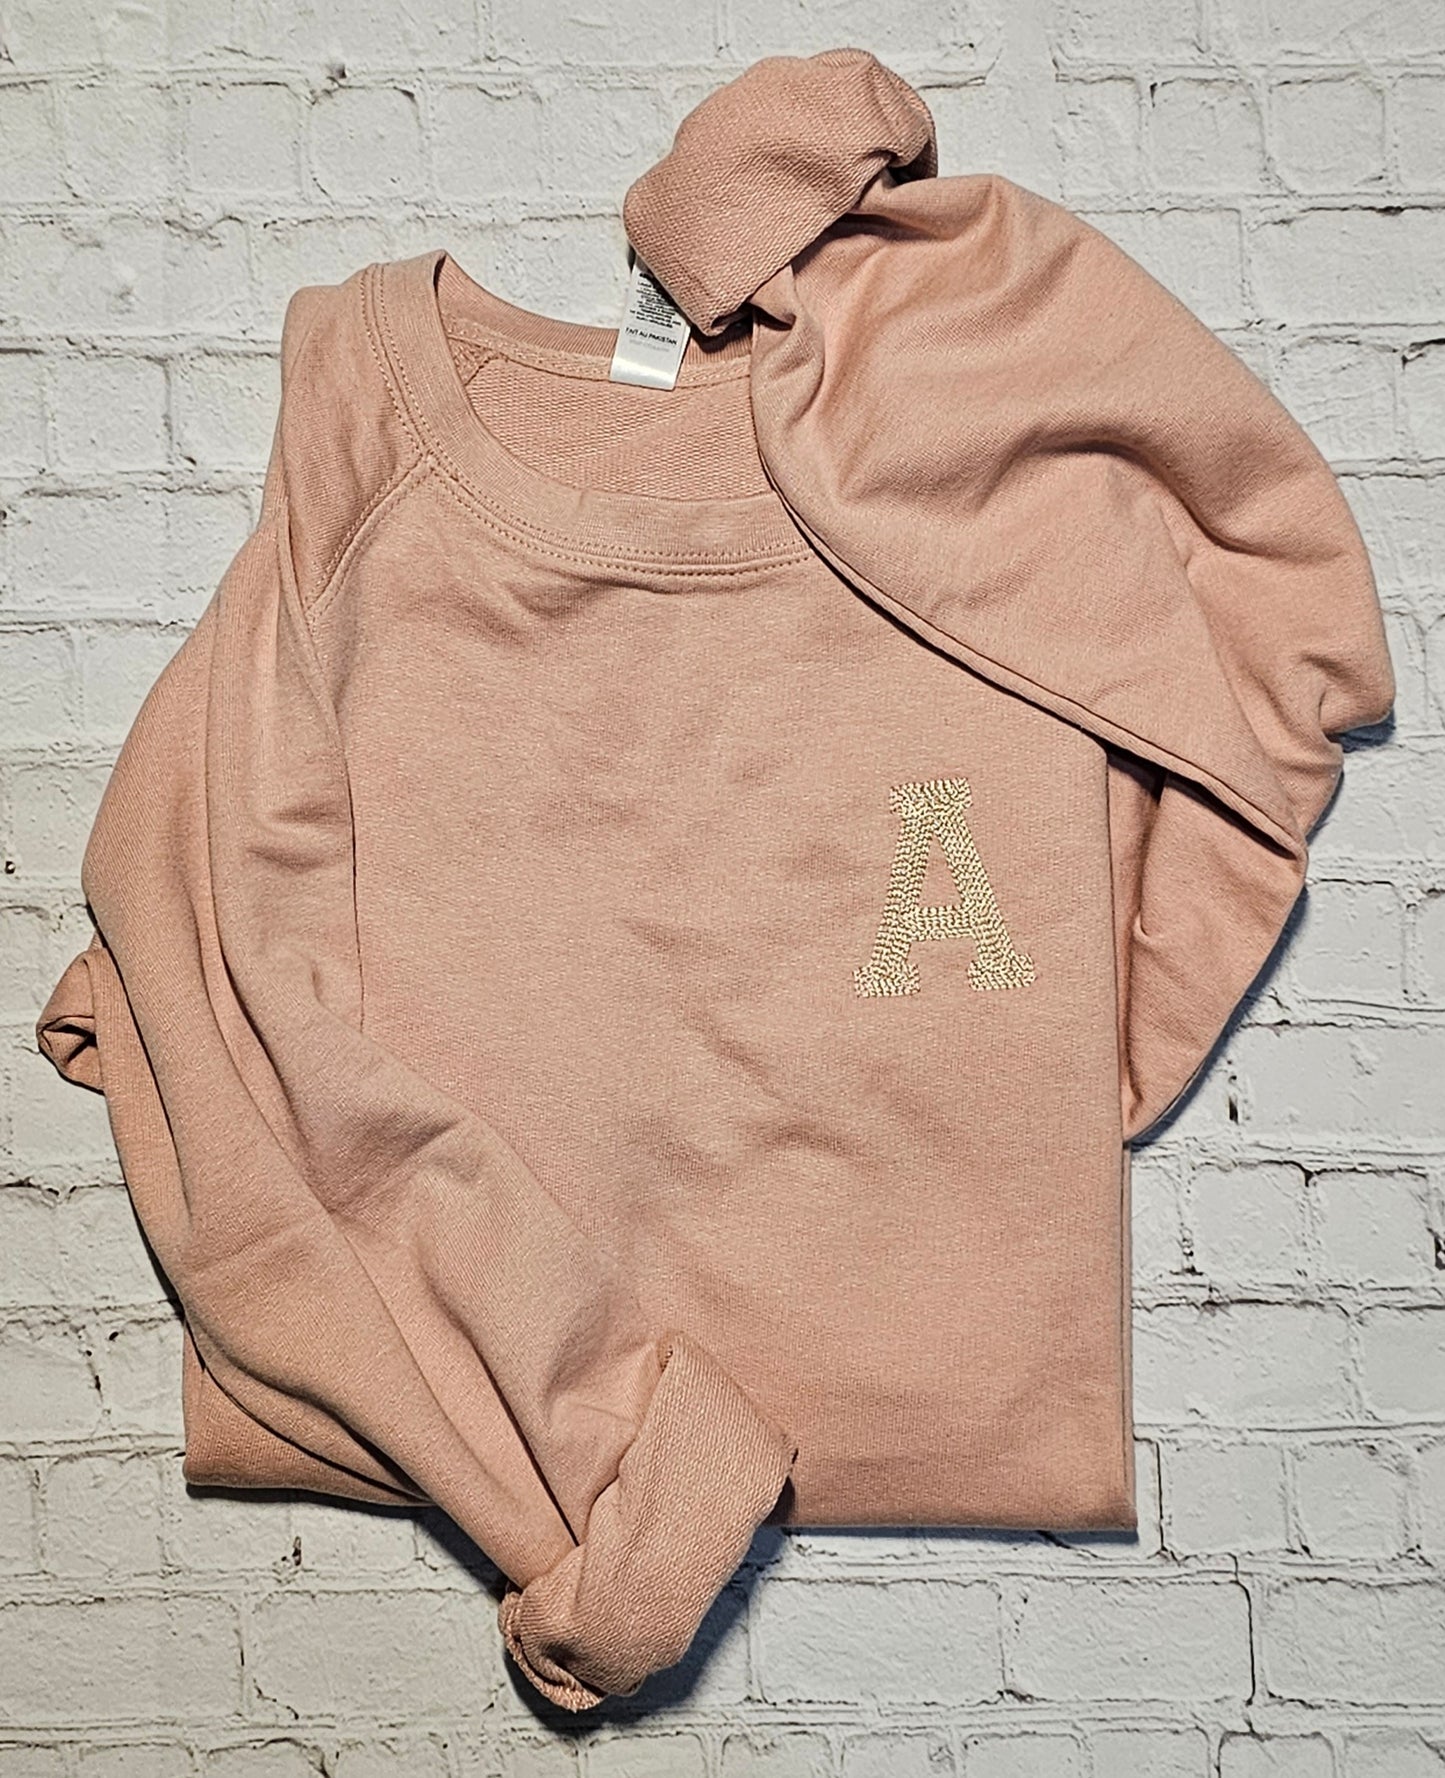 Embroidered Chain Stitch Monogram Lightweight Sweatshirt